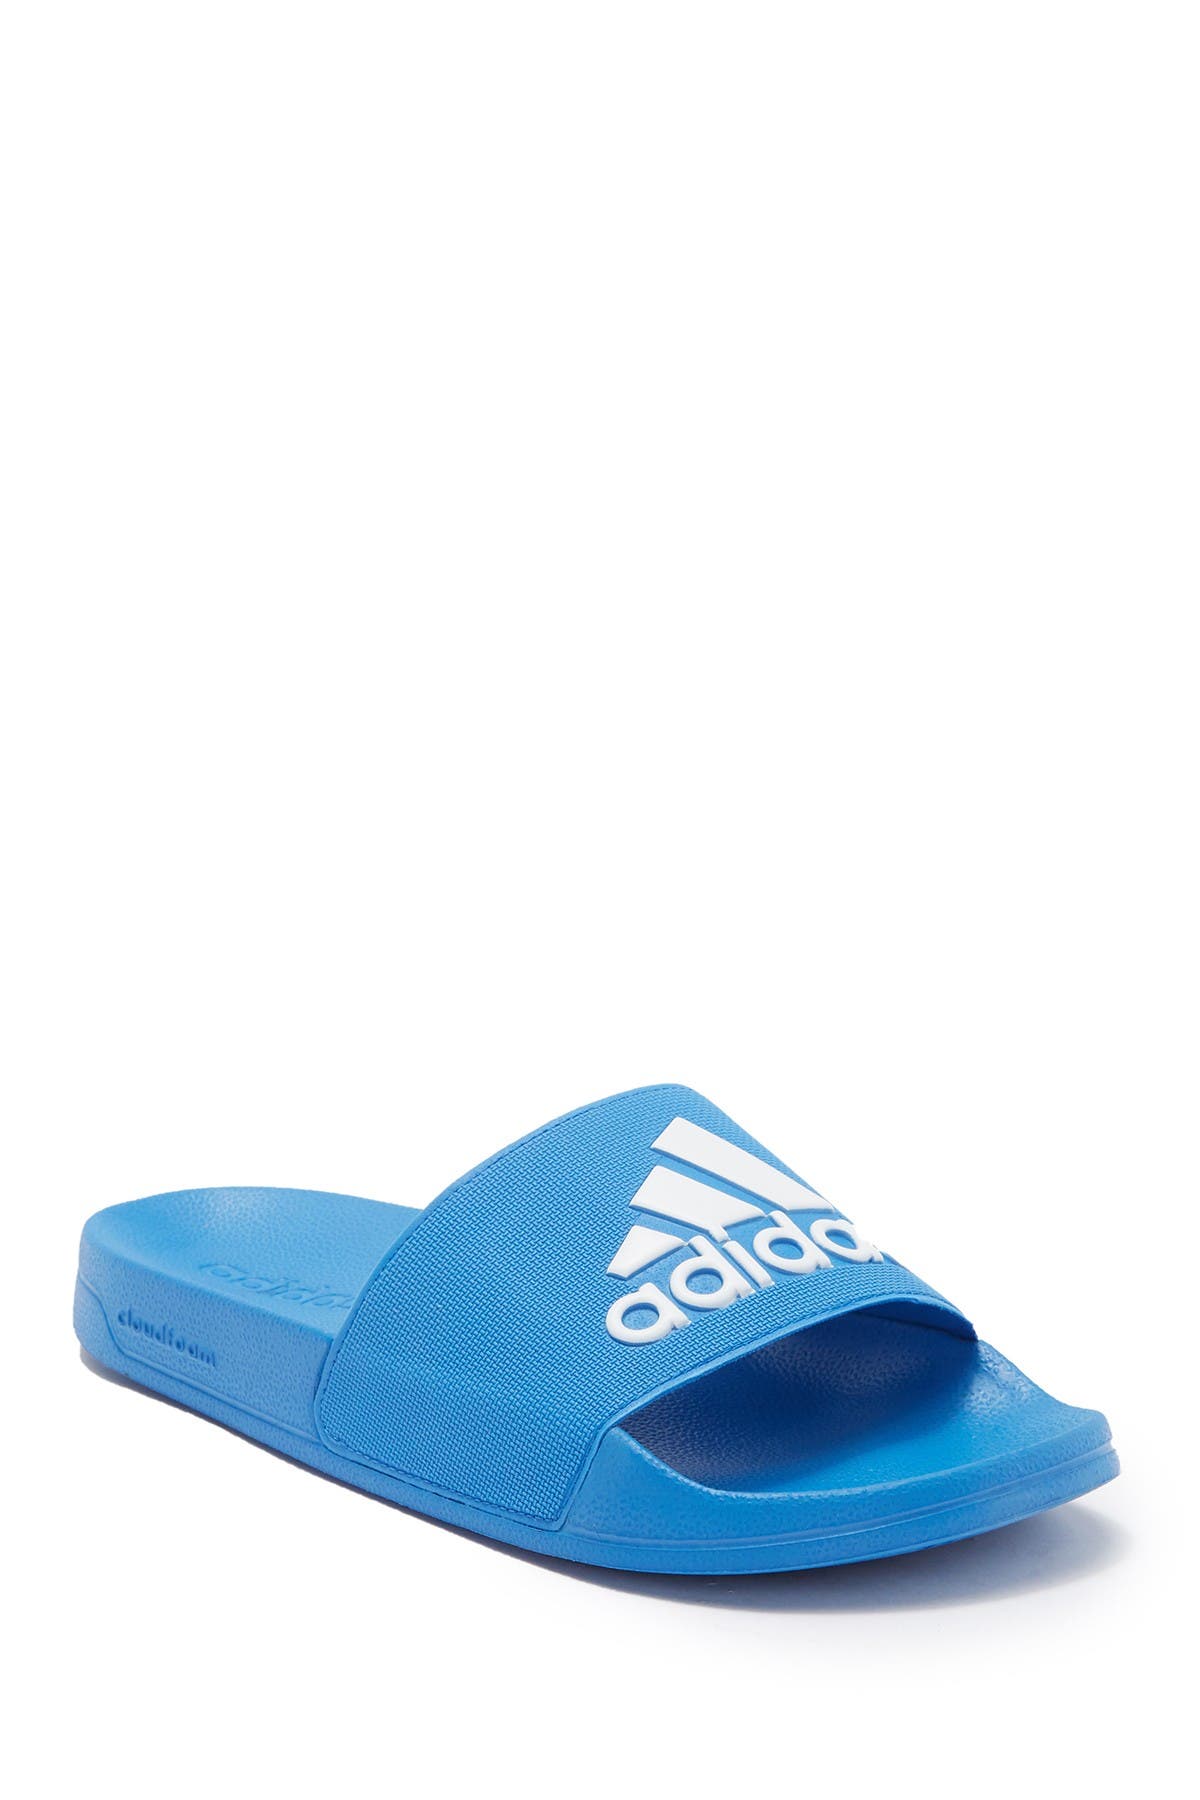 adilette shower slide sandal